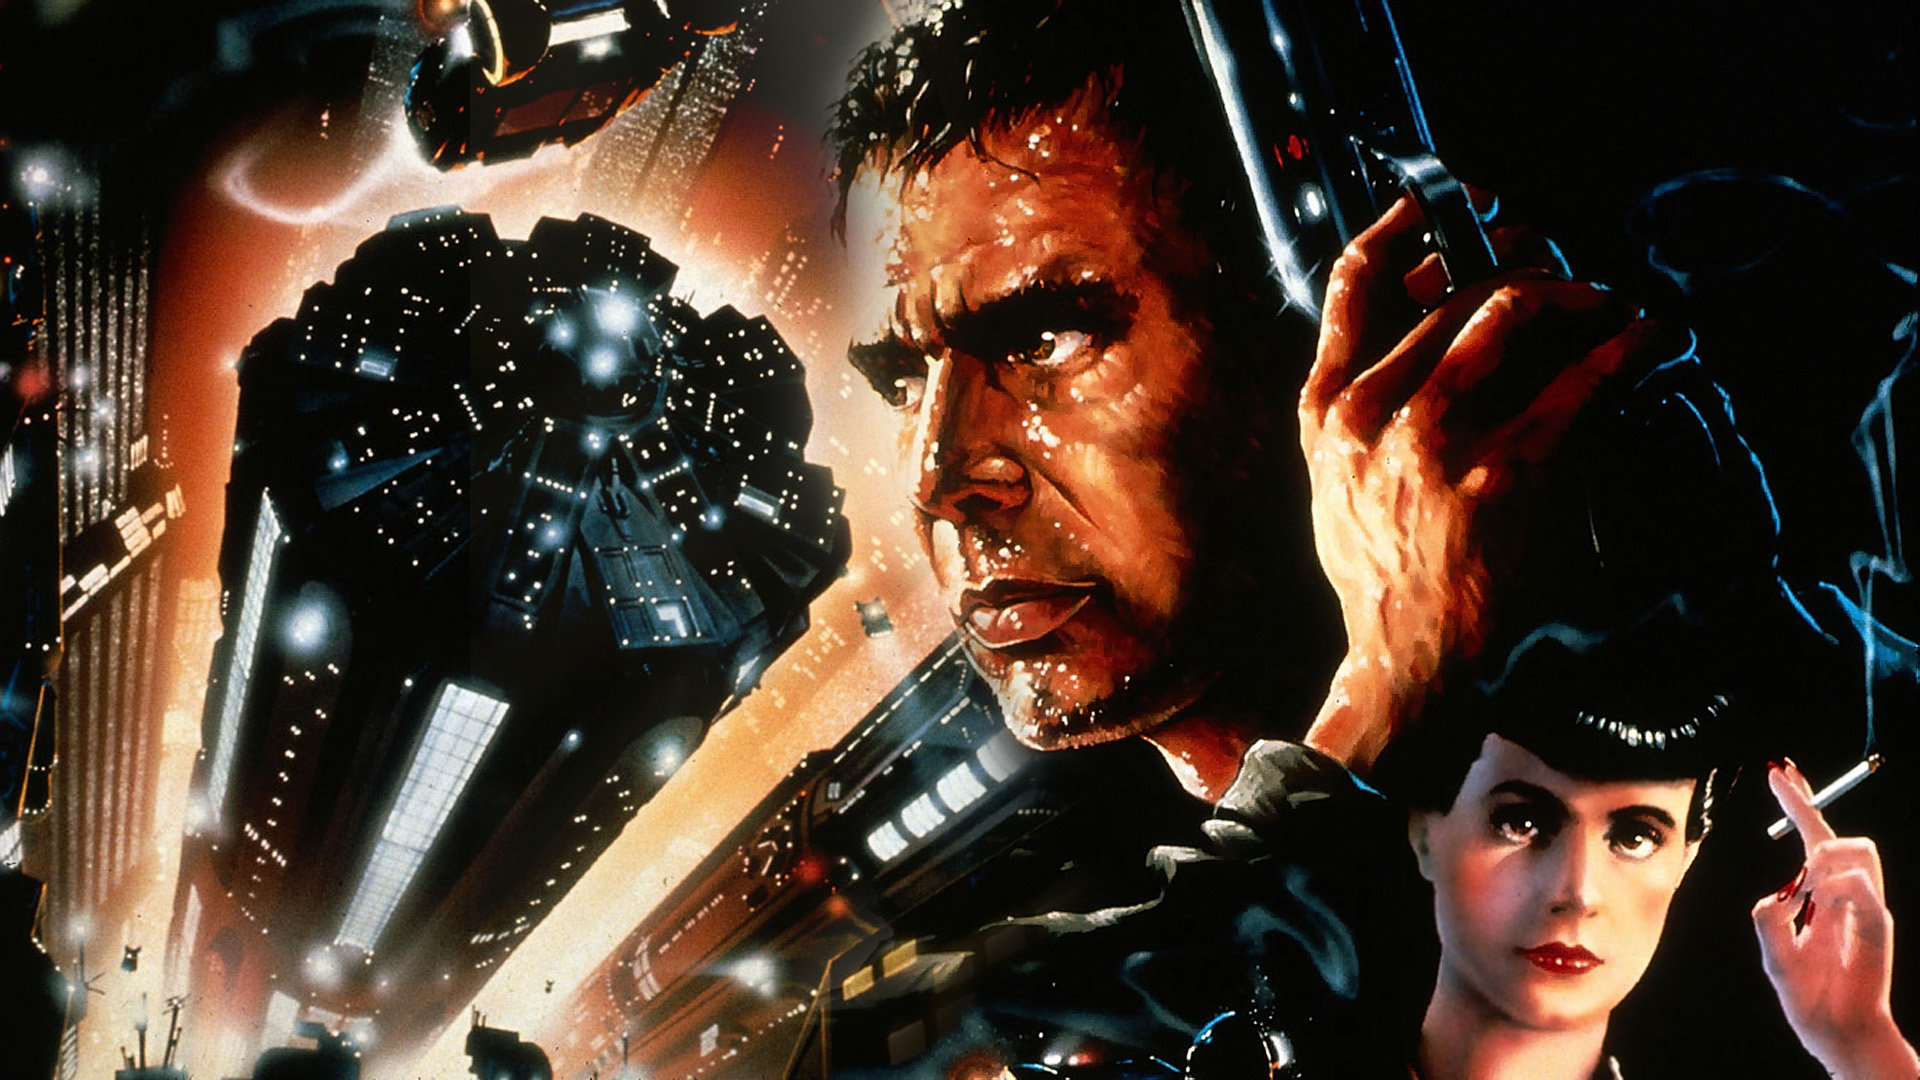 Atriz de Blade Runner diz que cena violenta de sexo foi vingança de diretor